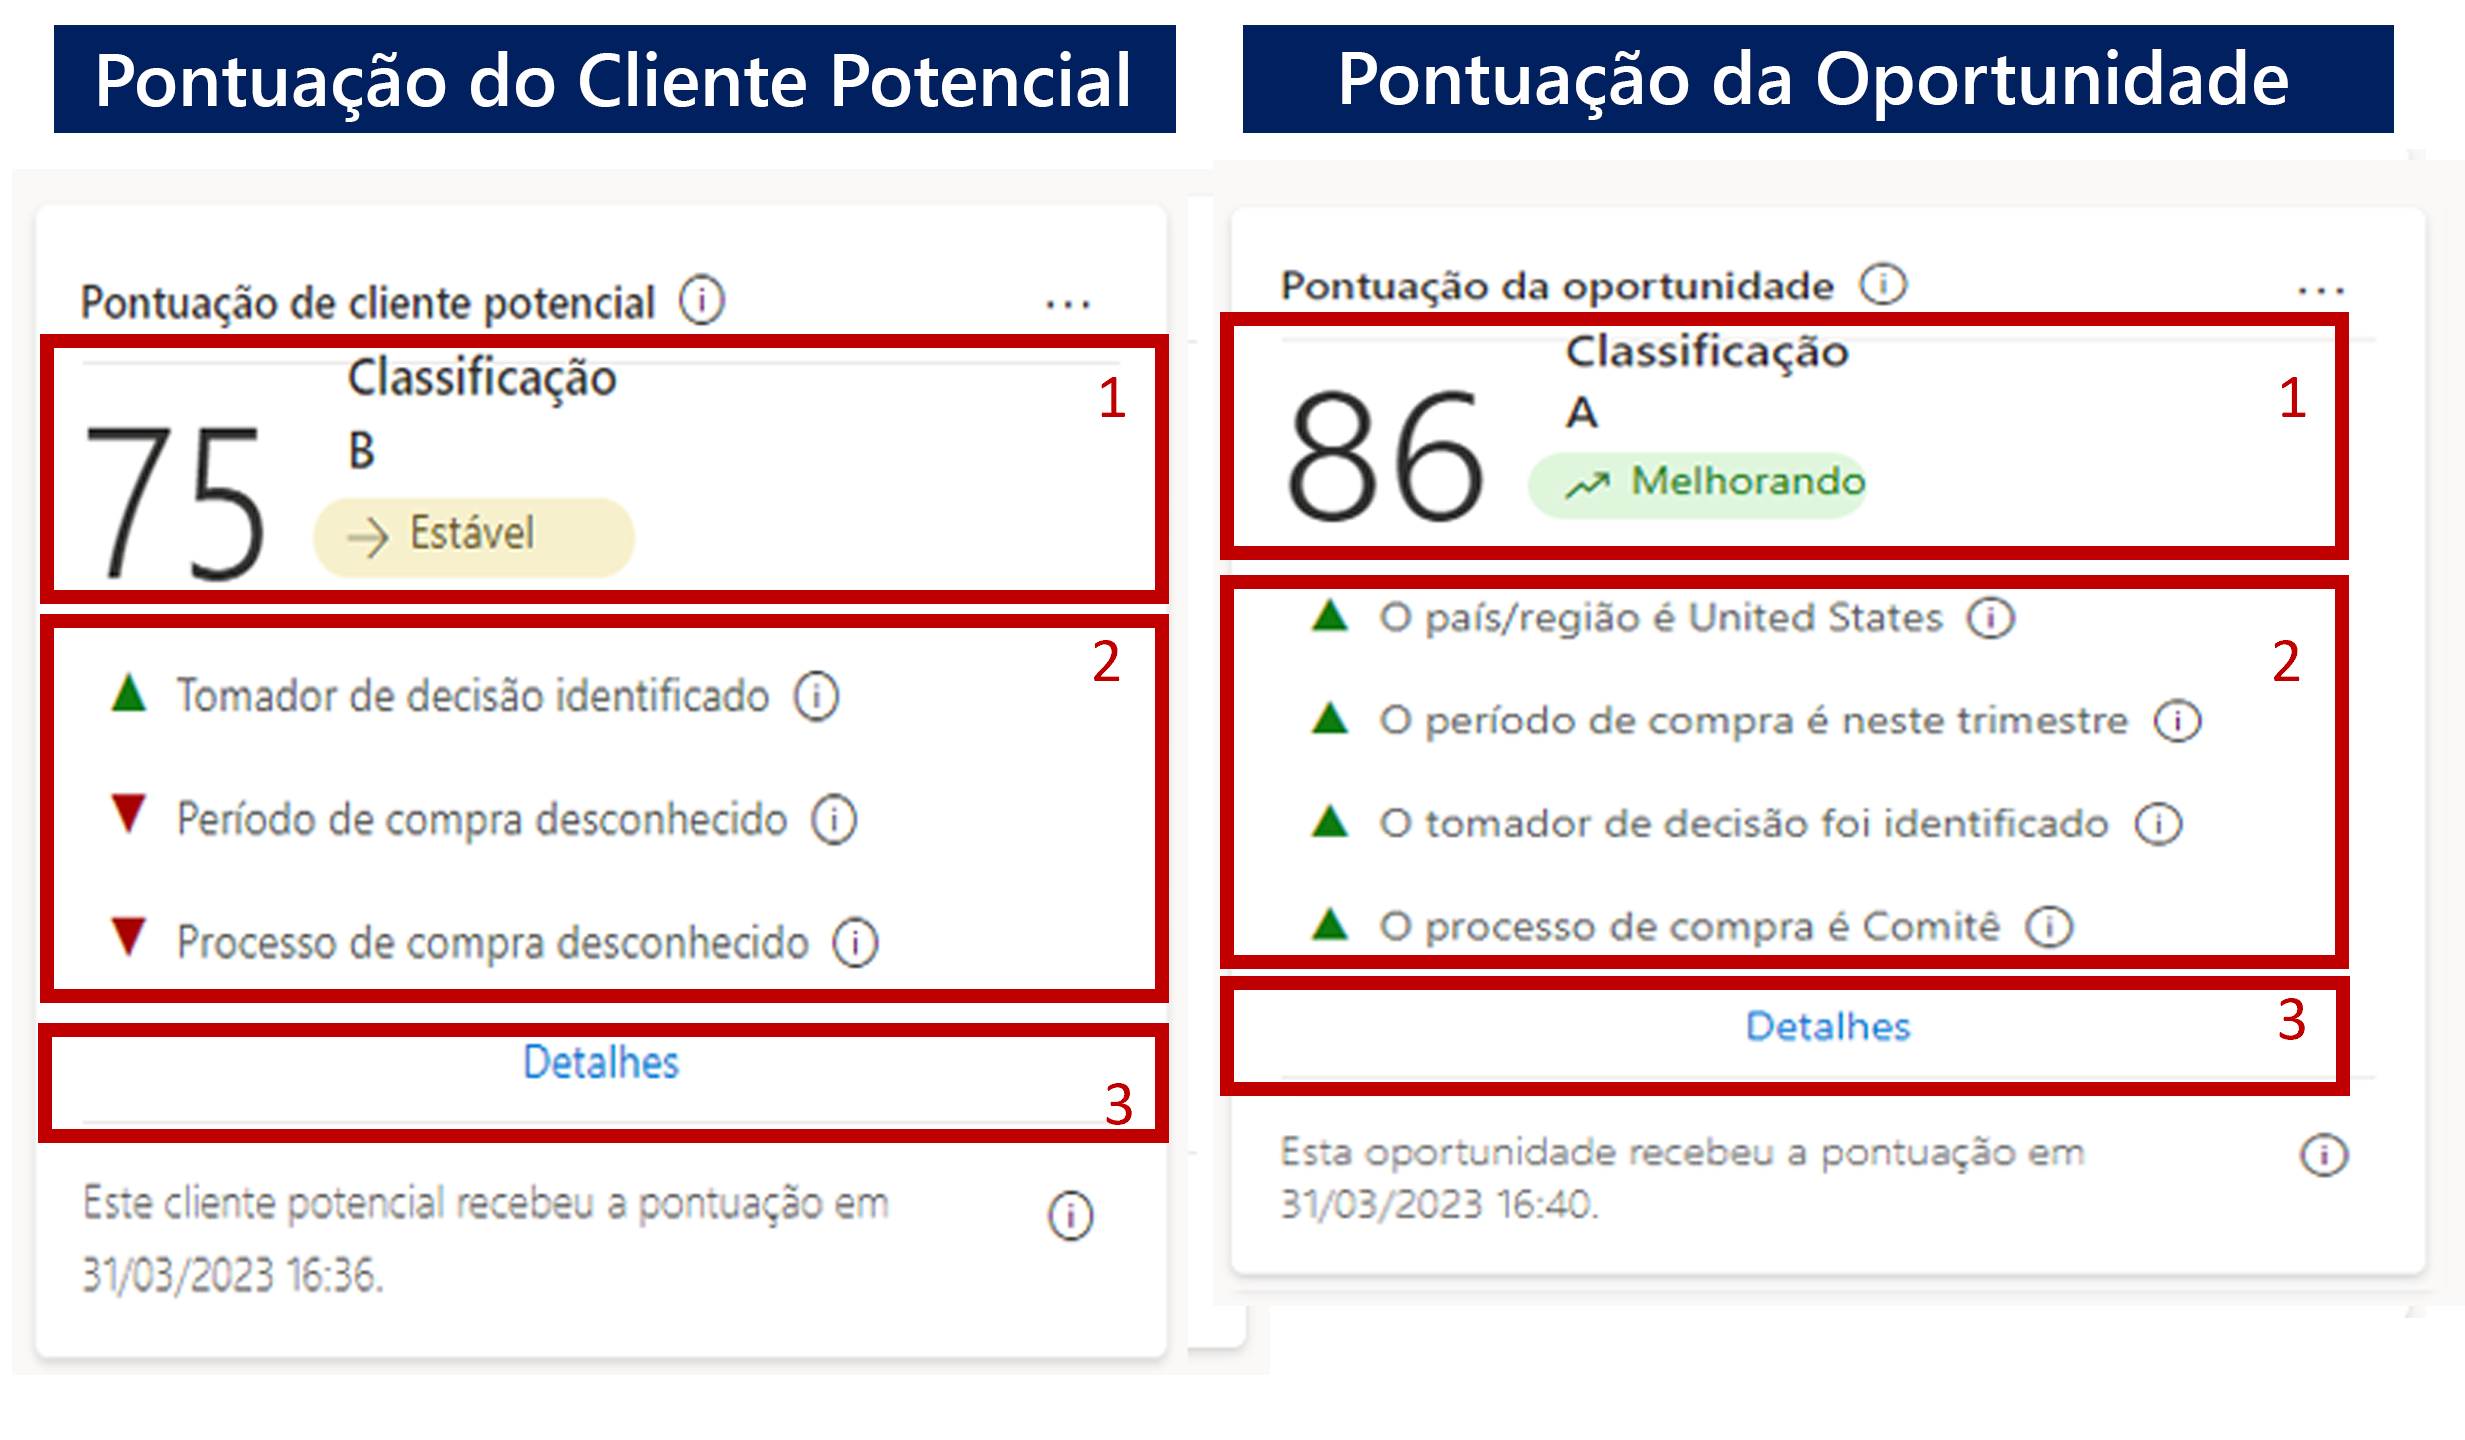 Captura de tela das seções de cartão de pontuação do cliente potencial e da oportunidade numeradas para corresponder à lista abaixo.